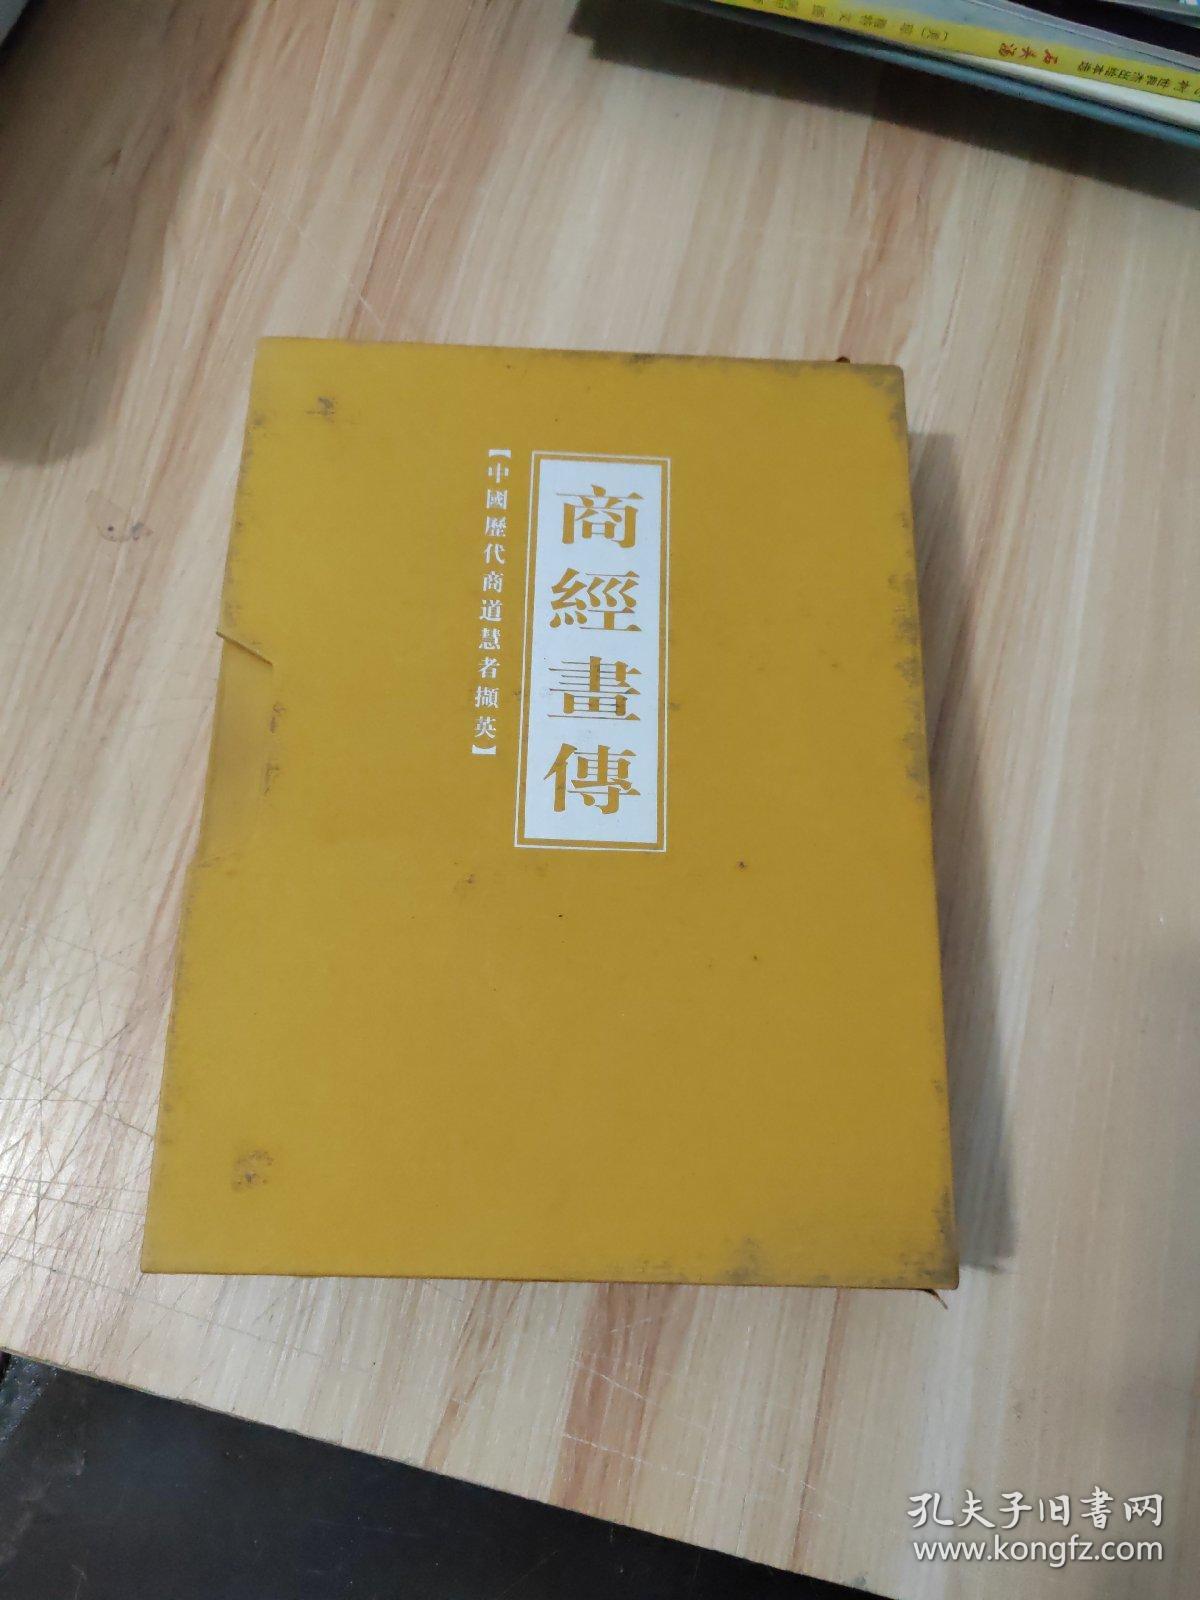 商经画传 豪华精装周历 带盒2005